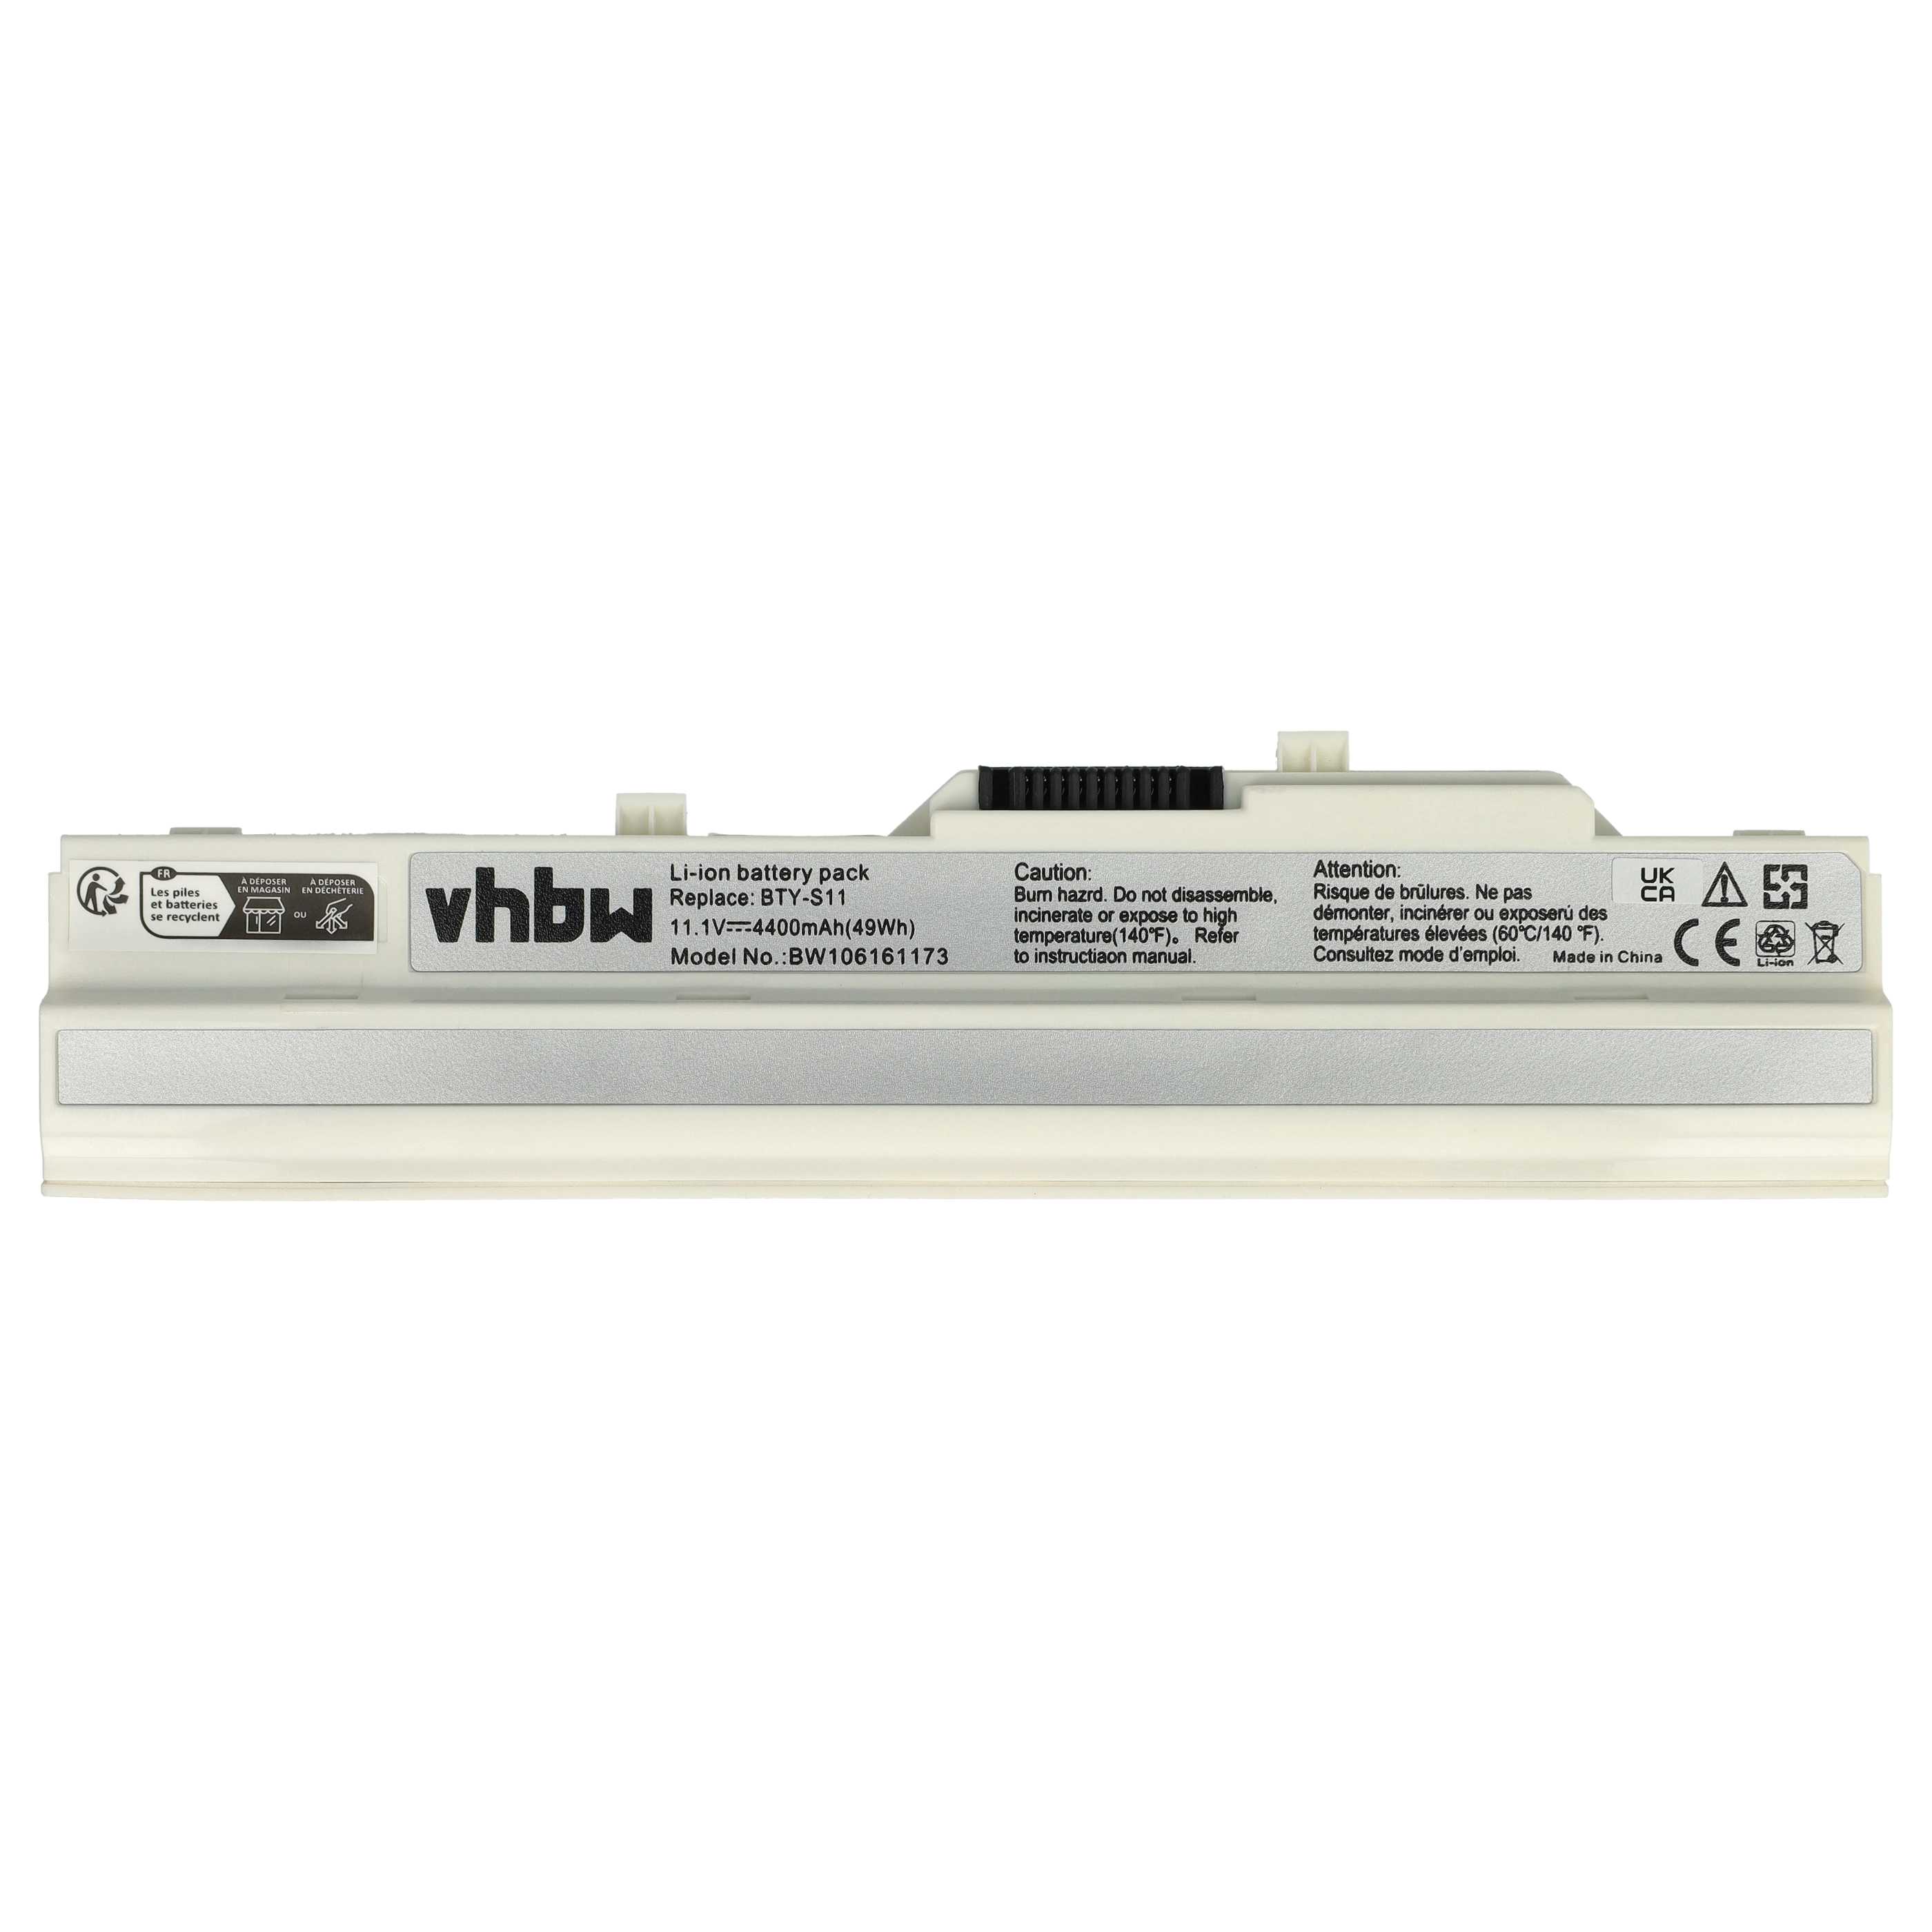 Batterie remplace Medion BTY-S11 pour ordinateur portable - 4400mAh 11,1V Li-ion, blanc